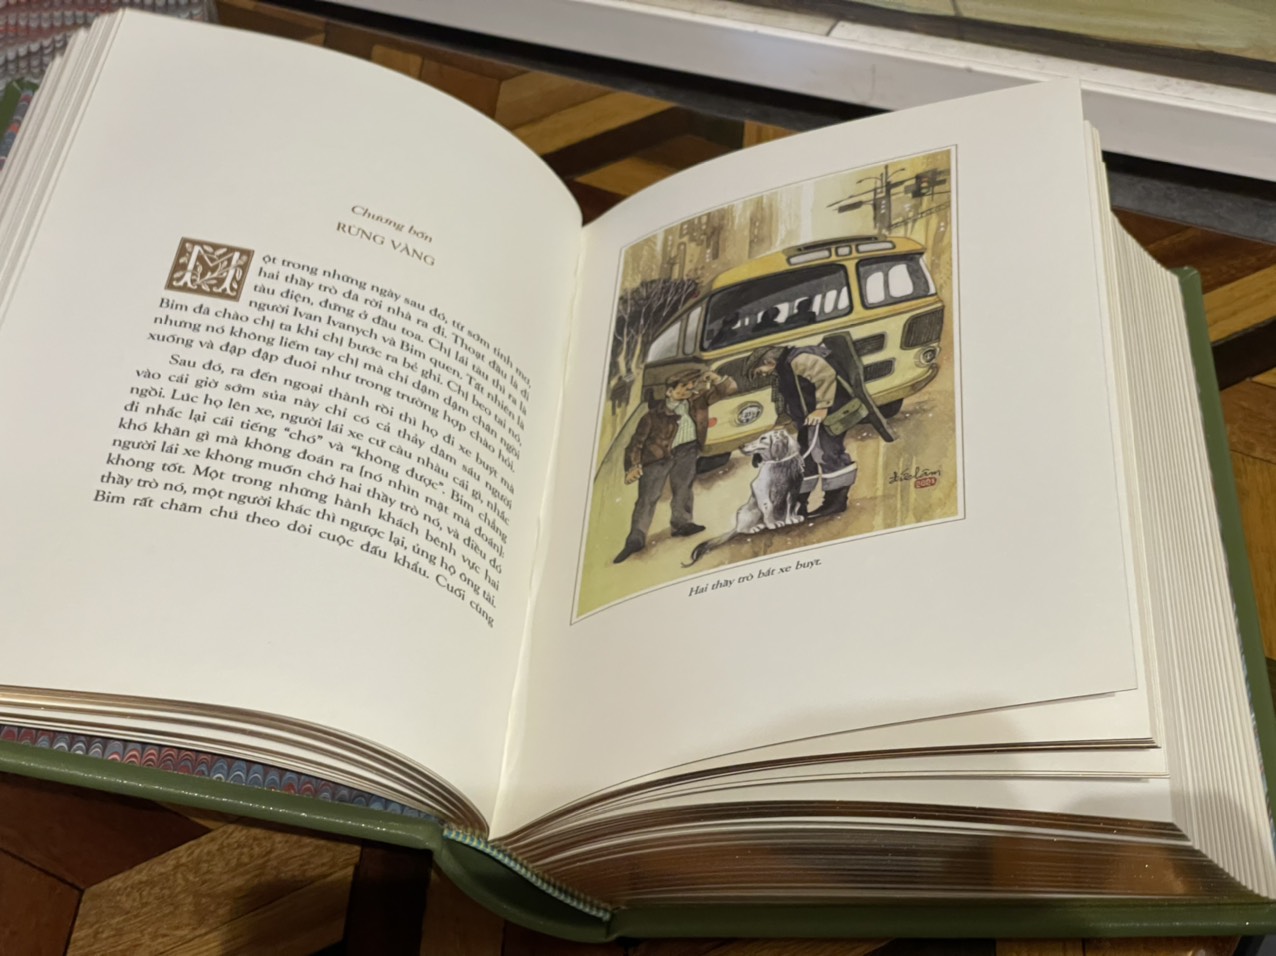 (Ấn bản giới hạn 500 cuốn) (bìa da microfiber) CON BIM TRẮNG TAI ĐEN – Gavriil Troyepolsky – minh họa mới của họa sĩ Đức Lâm – Đông A